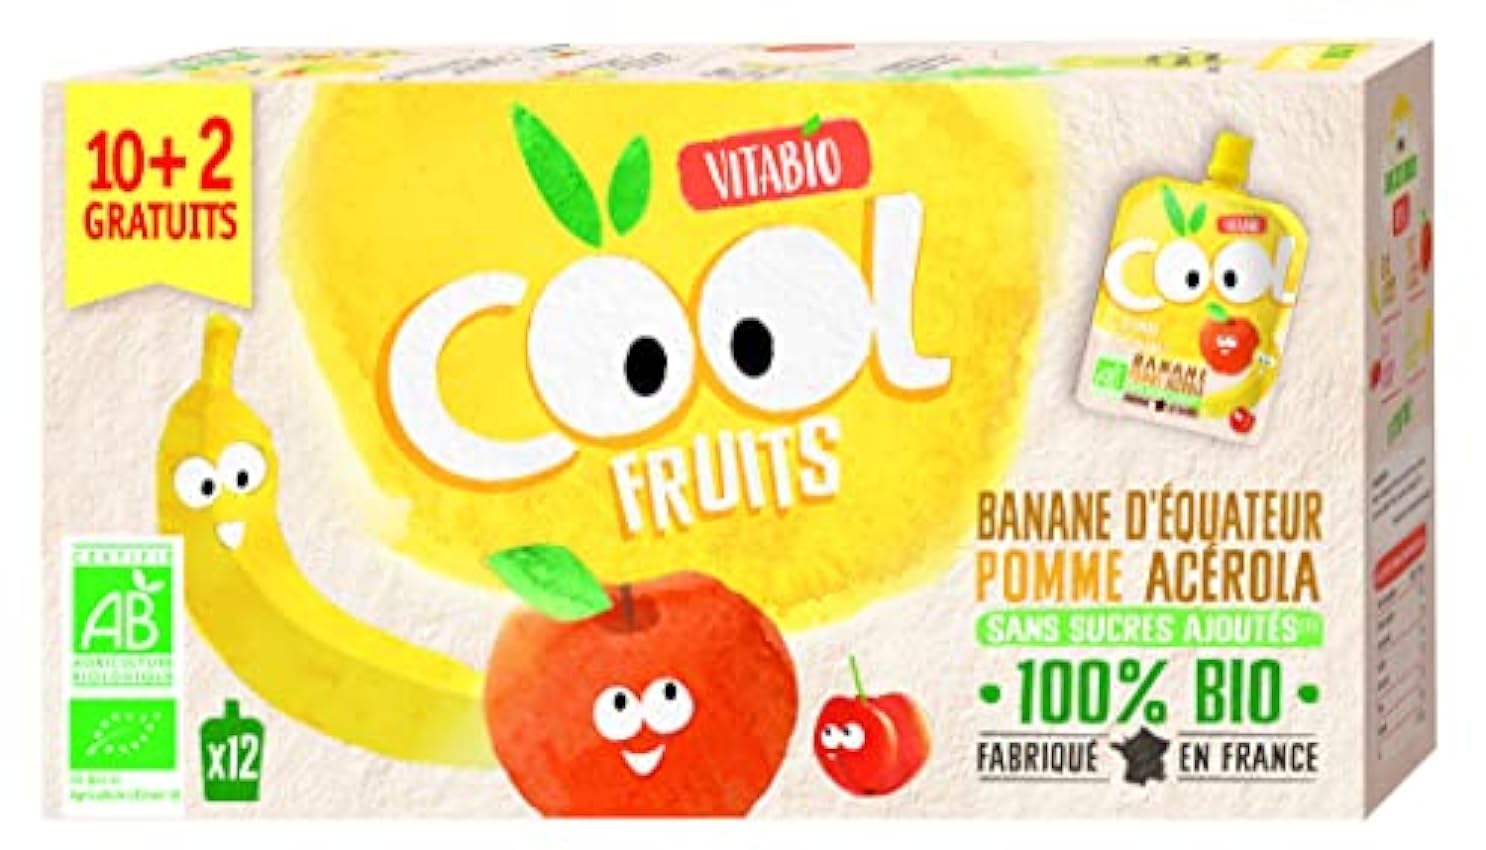 Vitabio - Bolsita De Fruta Bio - Cool Fruit - Platano Manzana - 90G - Pack Familiar 10+2 Gratis, 1080 gramo, 1 kFuNMskX